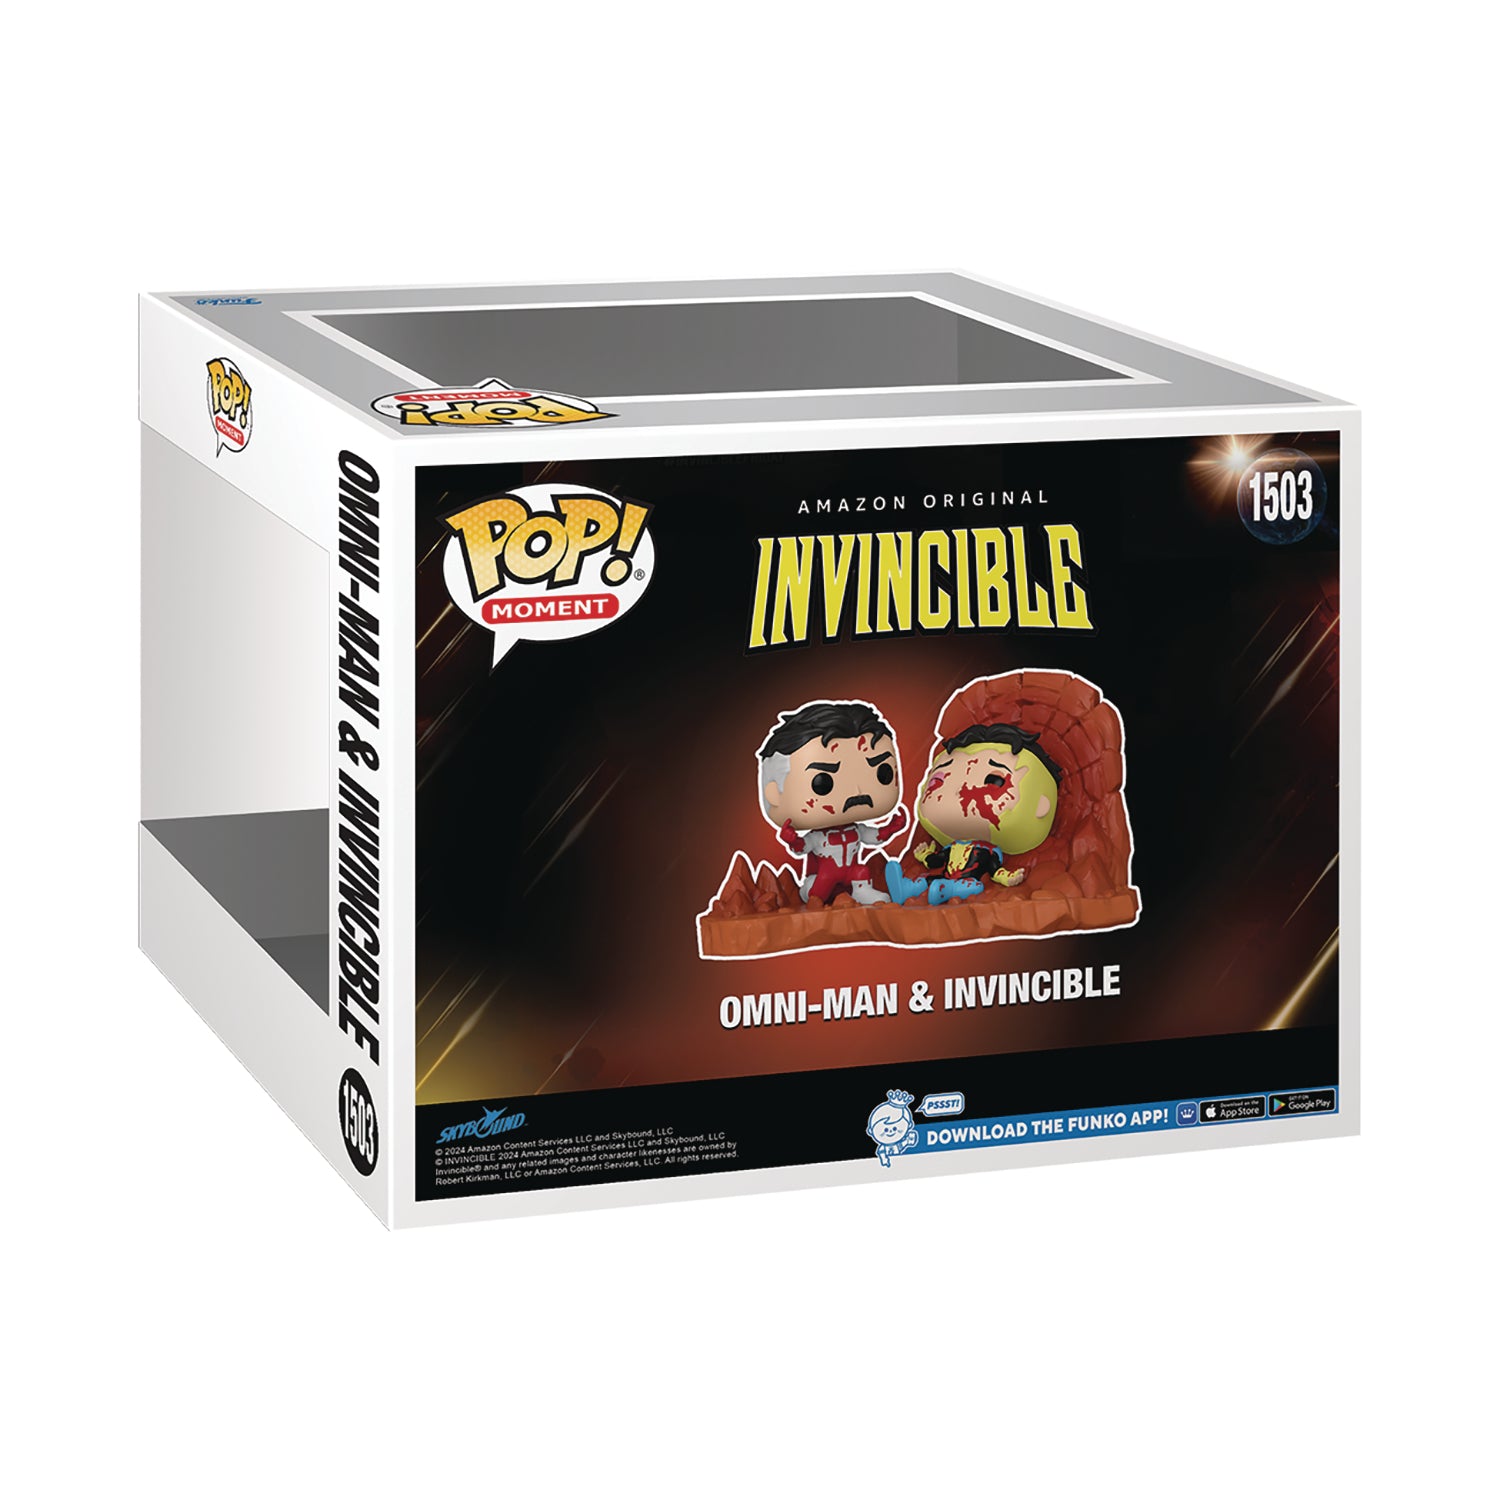 Invincible Omni-Man & Invincible Pop! Moment Vinyl Figure - State of Comics